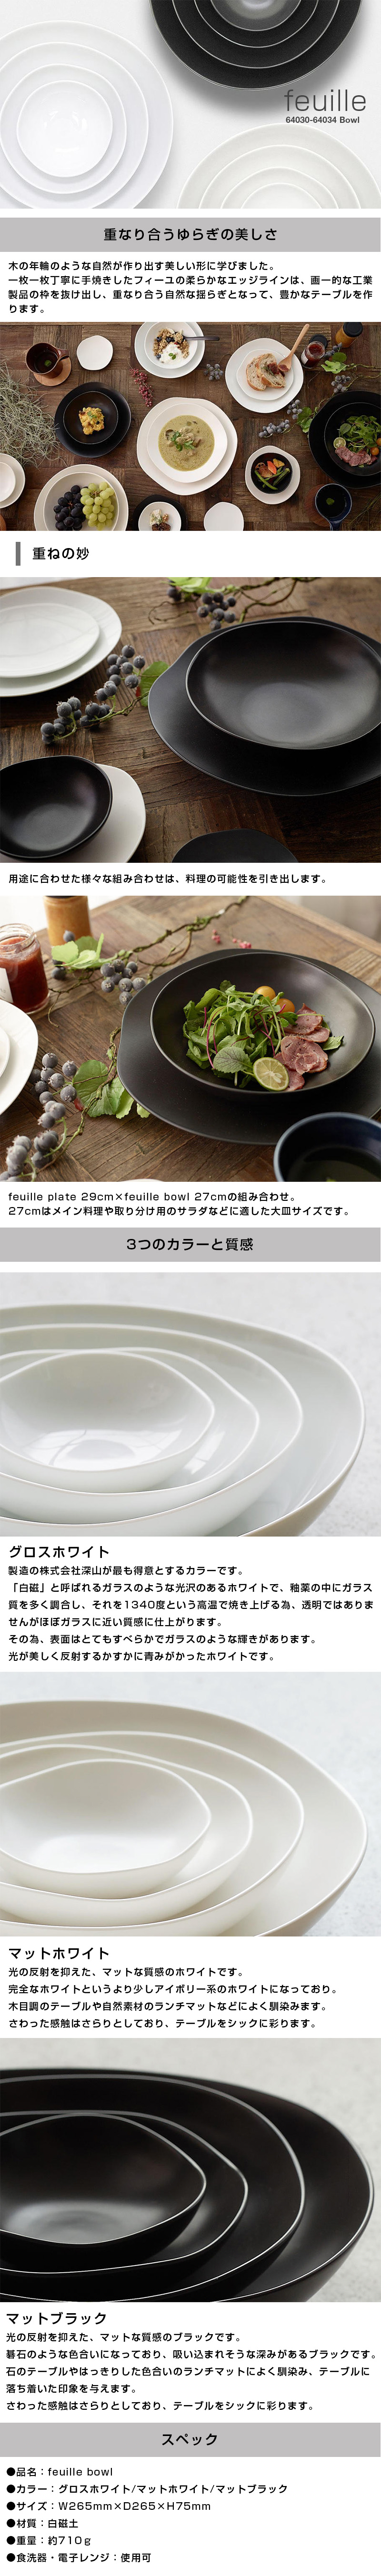 フィーユボウル feuille bowl 27cmのLP一枚画像。feuille bowl！ ●重なり合うゆらぎの美しさ。：木の年輪のような自然が作り出す美しい形に学びました。一枚一枚丁寧に手焼きしたフィーユの柔らかなエッジラインは、画一的な工業製品の枠を抜け出し、重なり合う自然な揺らぎとなって、豊かなテーブルを作ります。 ・重ねの妙：用途に合わせた様々な組み合わせは、料理の可能性を引き出します。feuille plate 29cm×feuille bowl 27cmの組み合わせ。27cmはメイン料理や取り分け用のサラダなどに適した大皿サイズです。 ●3つのカラーと質感。：・グロスホワイト/製造の株式会社深山が最も得意とするカラーです。「白磁」と呼ばれるガラスのような光沢のあるホワイトで、釉薬の中にガラス質を多く調合し、それを1340度という高温で焼き上げる為、透明ではありませんがほぼガラスに近い質感に仕上がります。その為、表面はとてもすべらかでガラスのような輝きがあります。光が美しく反射するかすかに青みがかったホワイトです。 ・マットホワイト/光の反射を抑えた、マットな質感のホワイトです。完全なホワイトというより少しアイボリー系のホワイトになっており。木目調のテーブルや自然素材のランチマットなどによく馴染みます。さわった感触はさらりとしており、テーブルをシックに彩ります。 ・マットブラック/光の反射を抑えた、マットな質感のブラックです。碁石のような色合いになっており、吸い込まれそうな深みがあるブラックです。石のテーブルやはっきりした色合いのランチマットによく馴染み、テーブルに落ち着いた印象を与えます。 ●スペック：・品名/feuille bowl ・カラー/グロスホワイト、マットホワイト、マットブラック ・サイズ/W265mm×D265×H75mm ・材質/白磁土 ・重量/約710g ・食洗器、電子レンジ/使用可